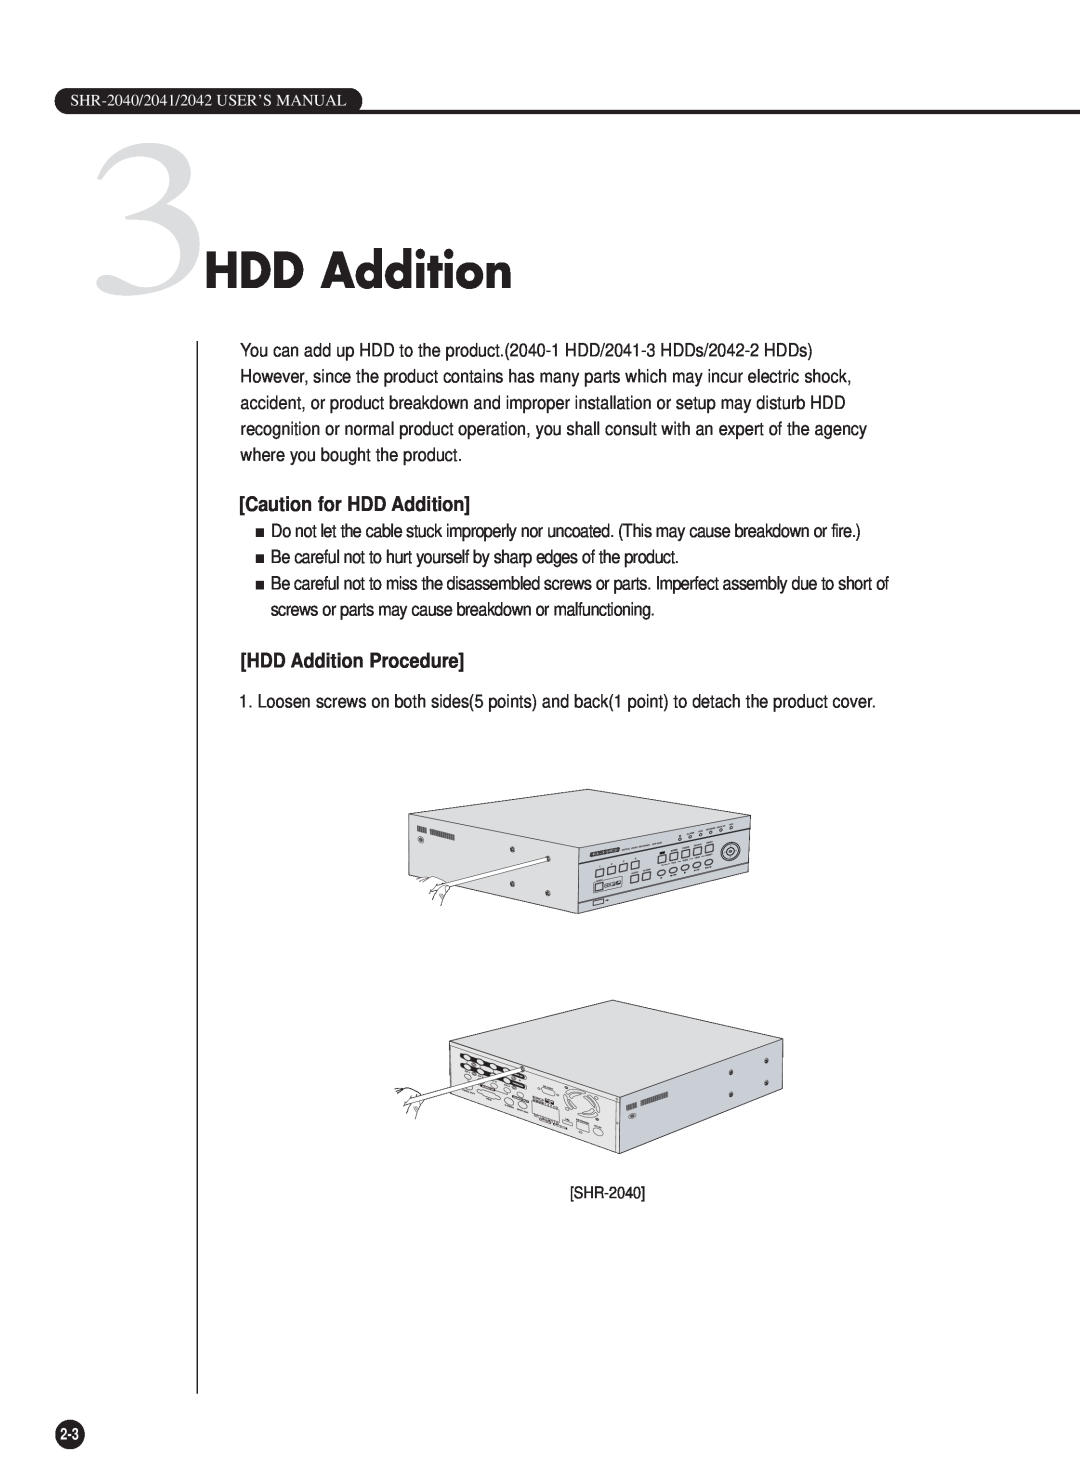 Samsung SHR-2040P/XEC, SHR-2040P/GAR, SHR-2042P, SHR-2040PX 3HDD Addition, Caution for HDD Addition, HDD Addition Procedure 